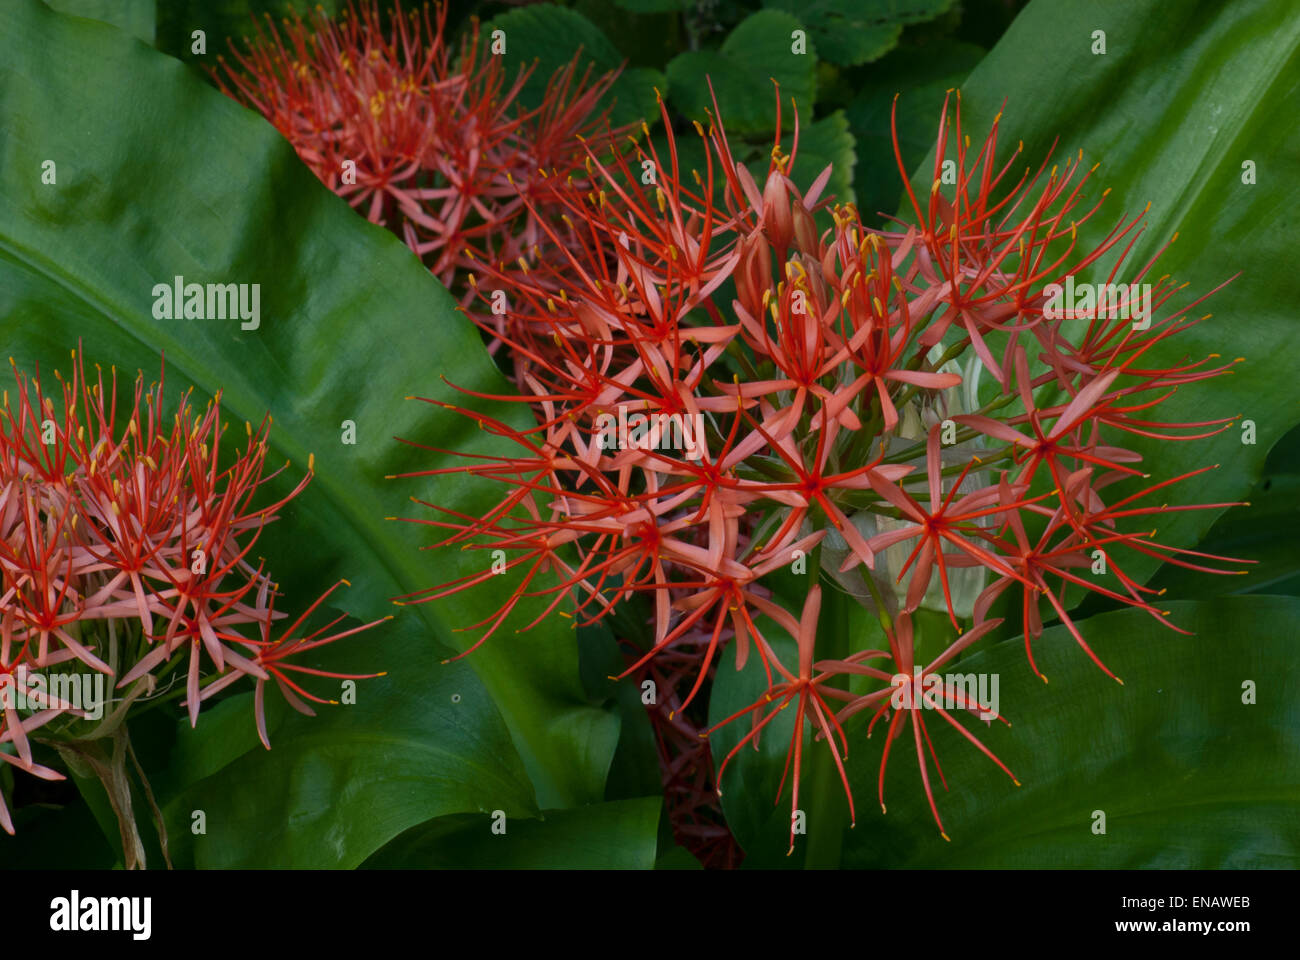 Scadoxos Multiflorus sub SP. Katharinae. Feuerball-Lilie. Nationalen botanischen Garten von Kirstenbosch. Cape Town. Südafrika Stockfoto